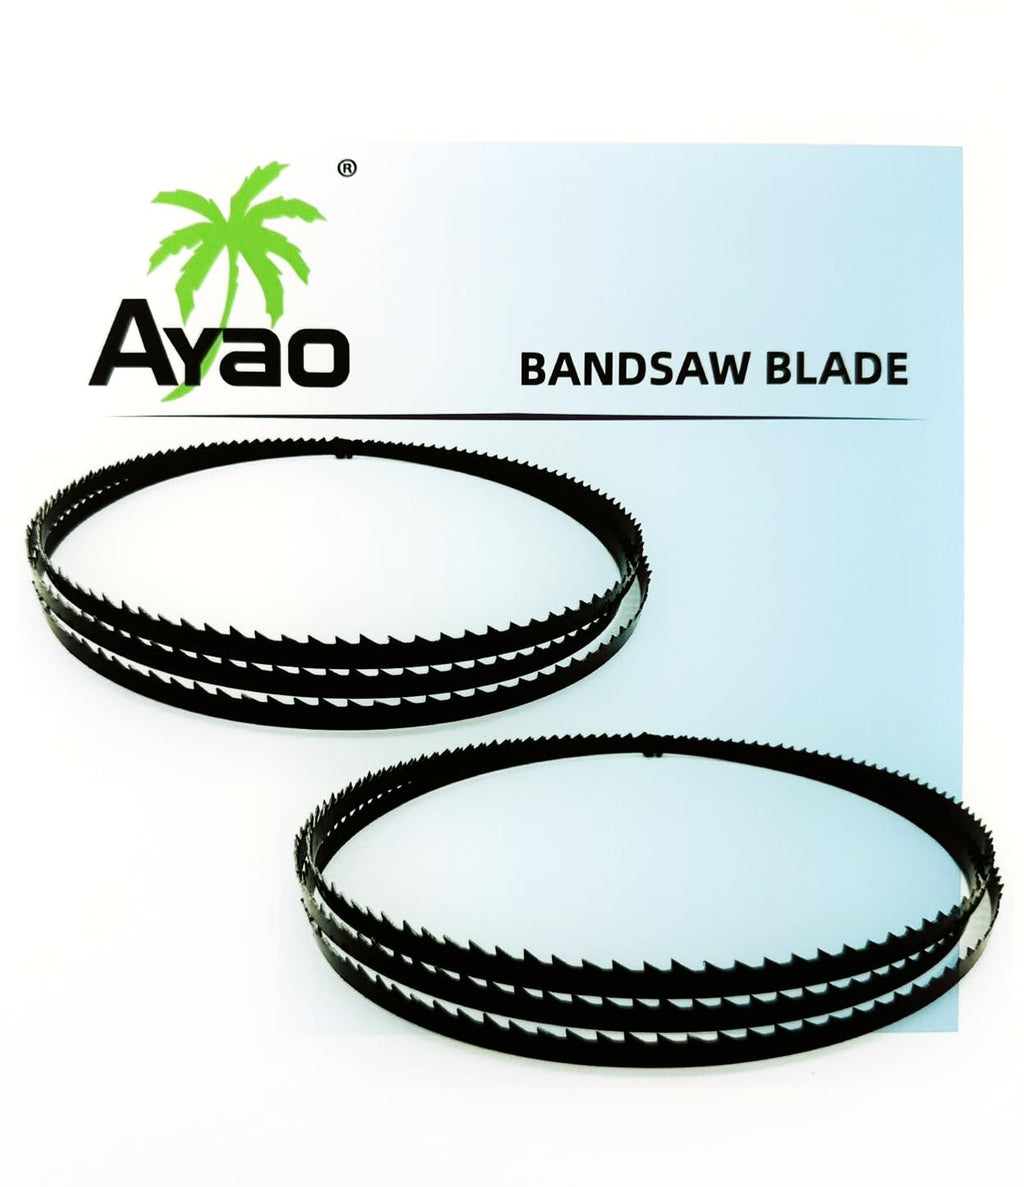  [AUSTRALIA] - AYAO band saw blade 1400 mm x 6.35 mm x 0.4 mm x 6 ZpZ (2 saw blades)